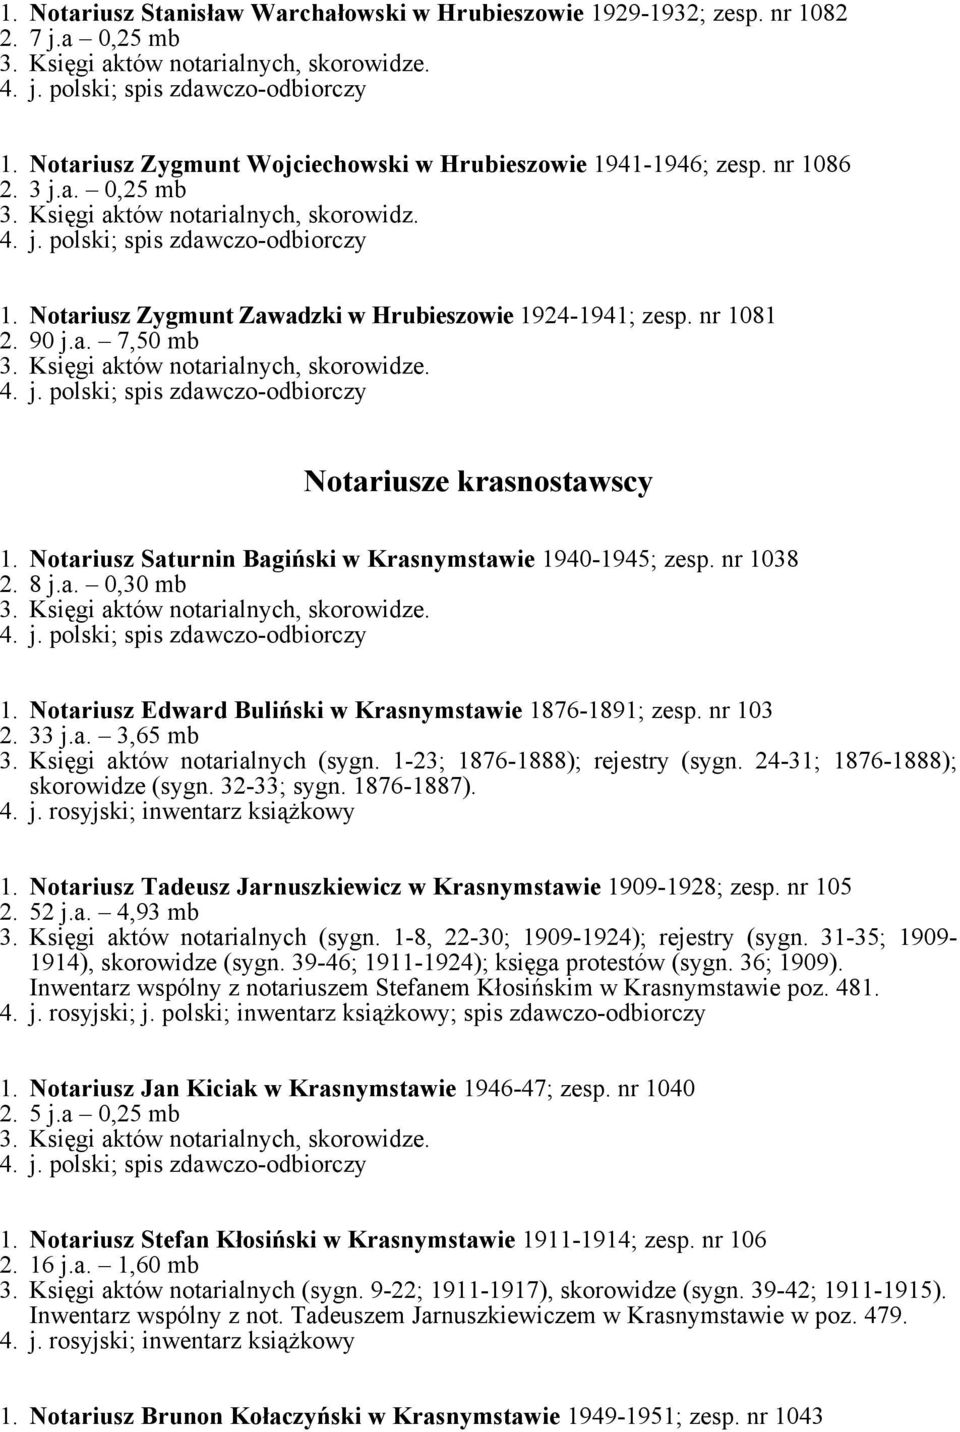 Notariusz Edward Buliński w Krasnymstawie 1876-1891; zesp. nr 103 2. 33 j.a. 3,65 mb 3. Księgi aktów notarialnych (sygn. 1-23; 1876-1888); rejestry (sygn. 24-31; 1876-1888); skorowidze (sygn.